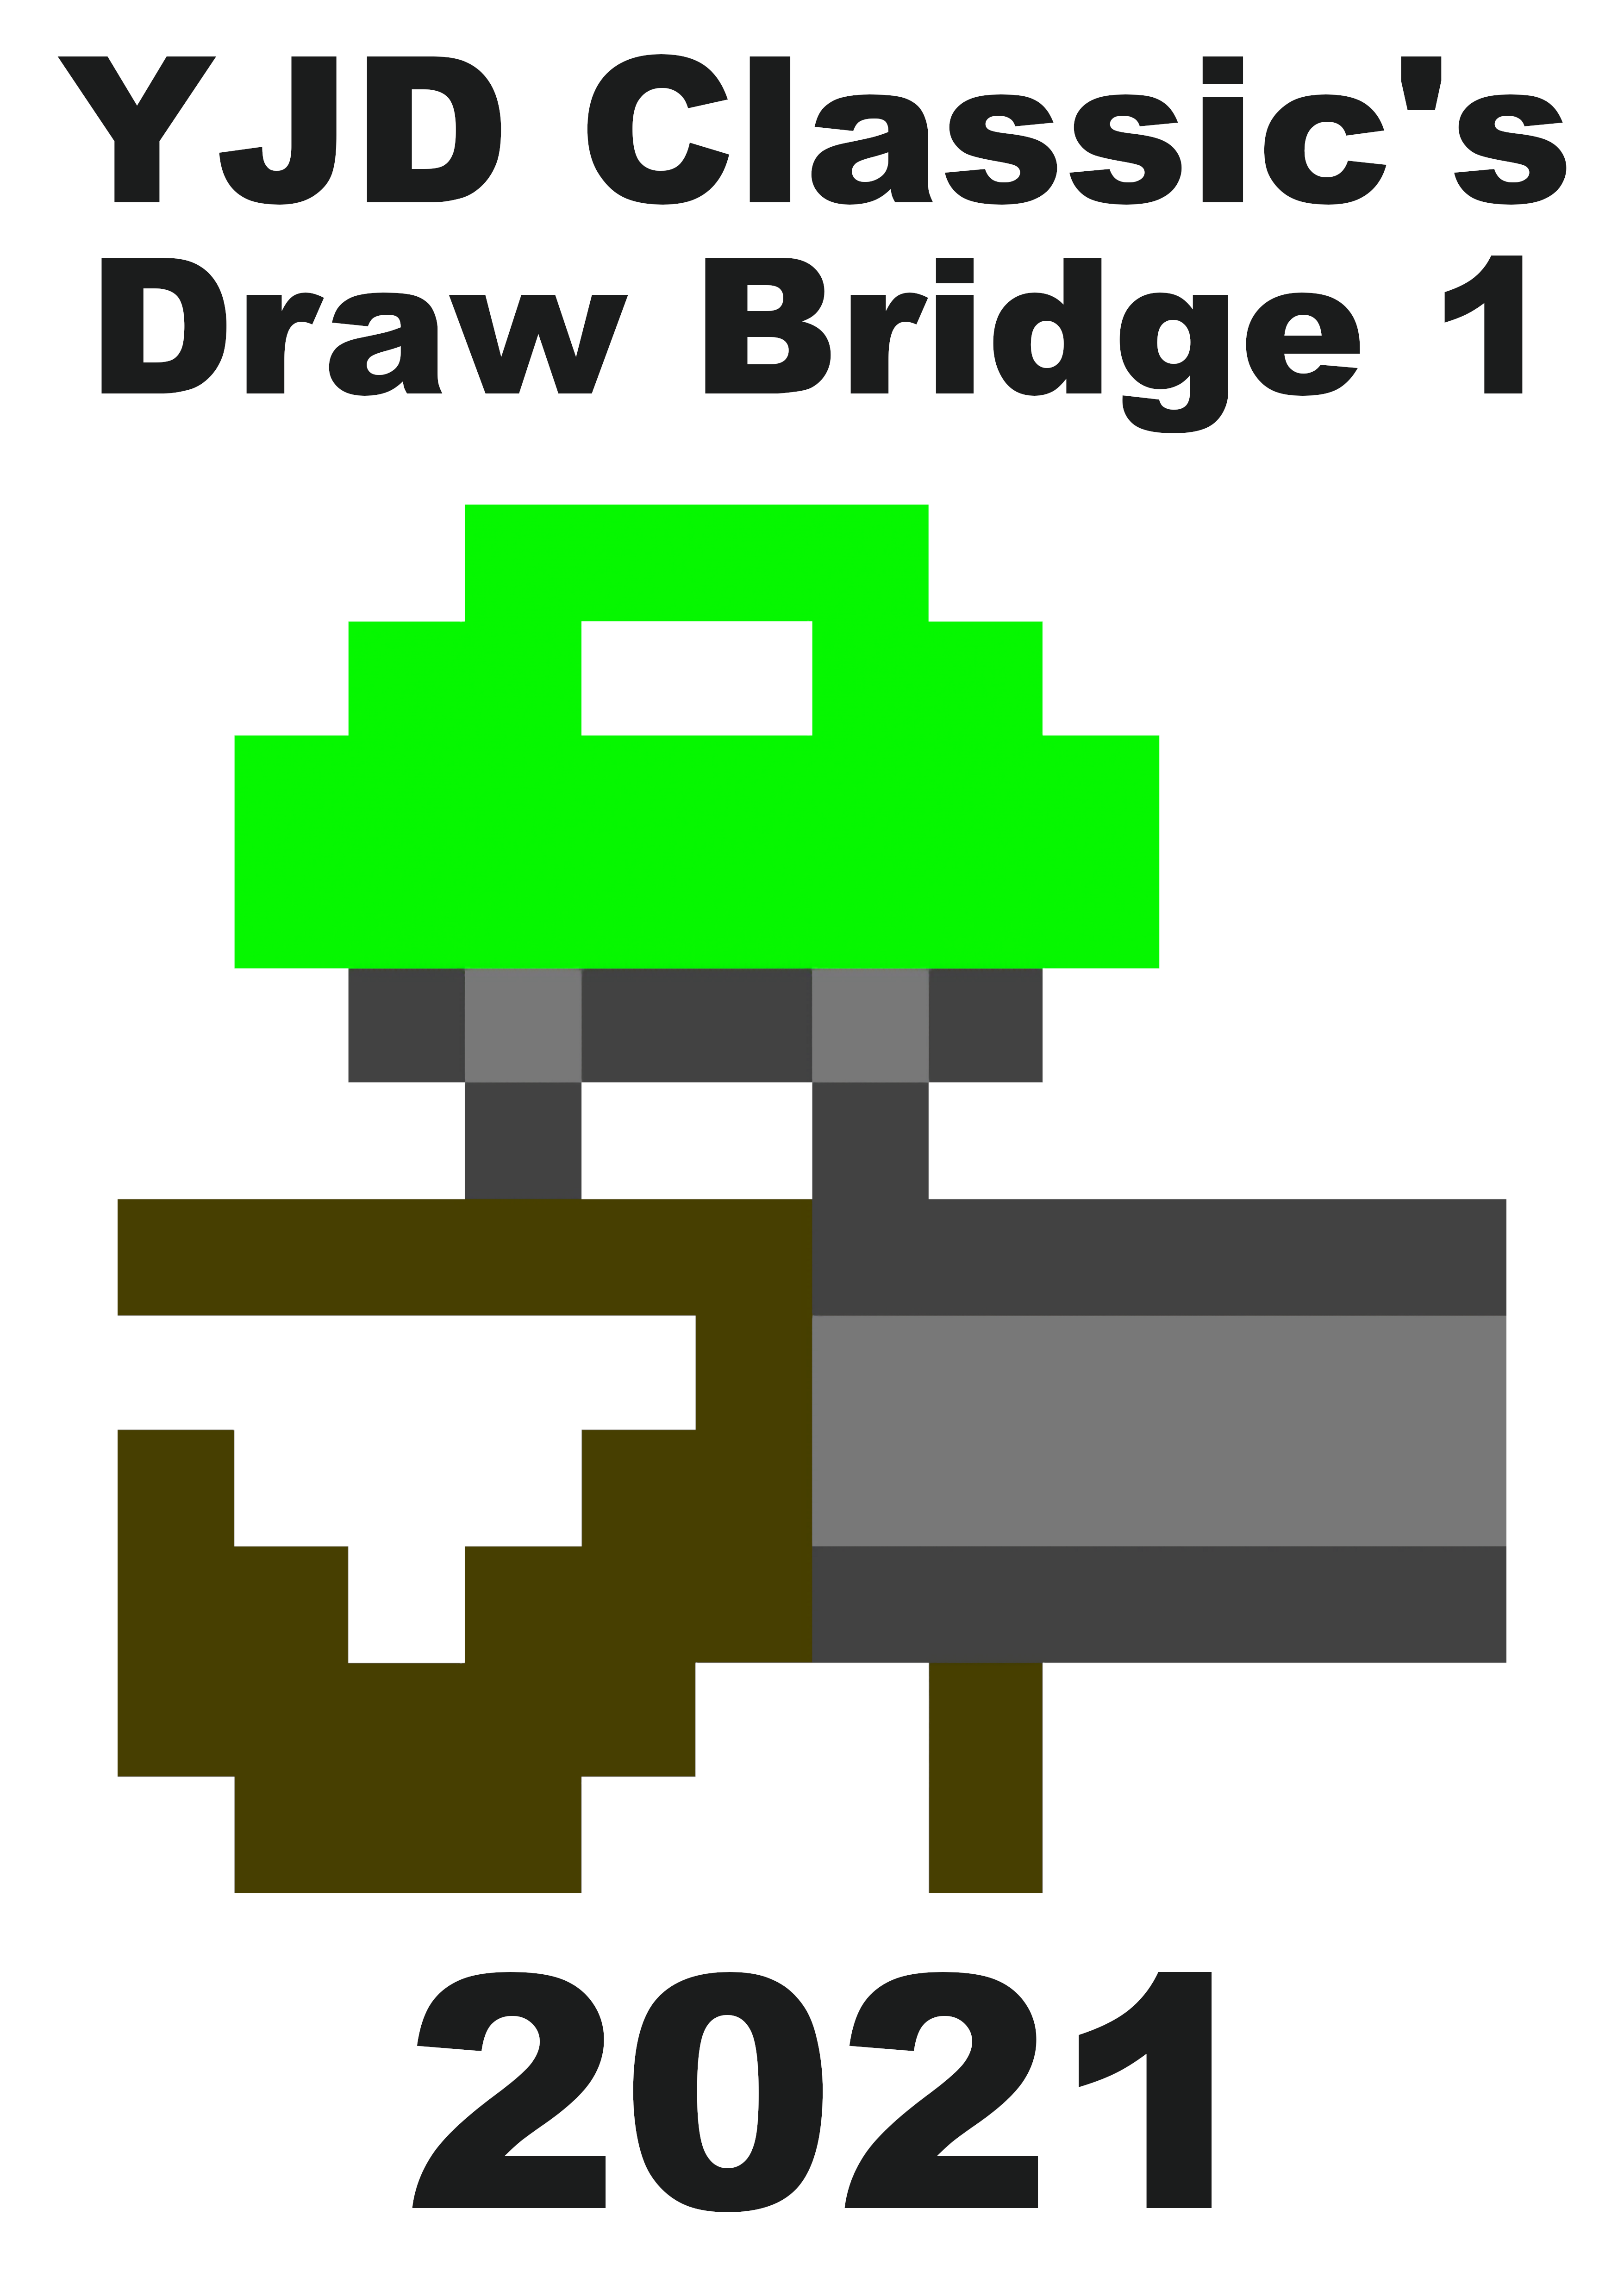 Draw Bridge 1